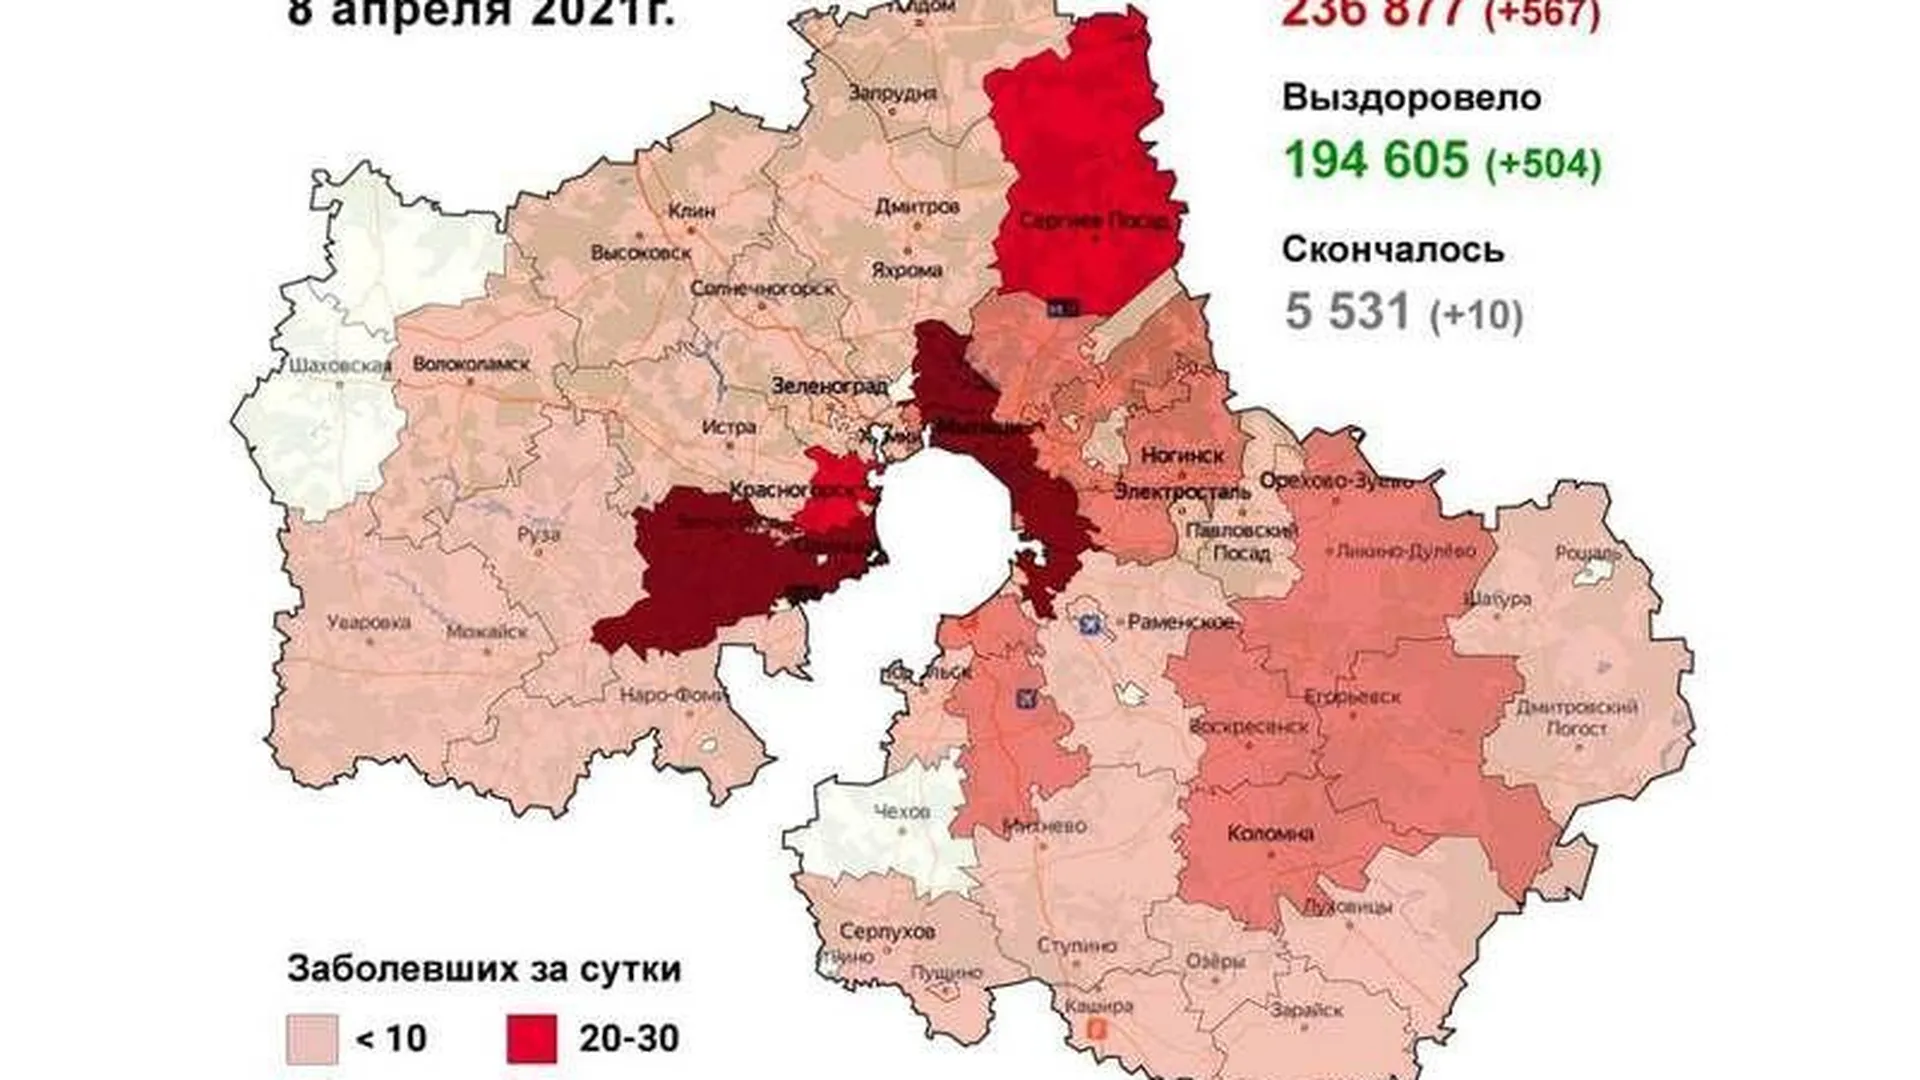 Названы худшие округа по распространению коронавируса в Подмосковье